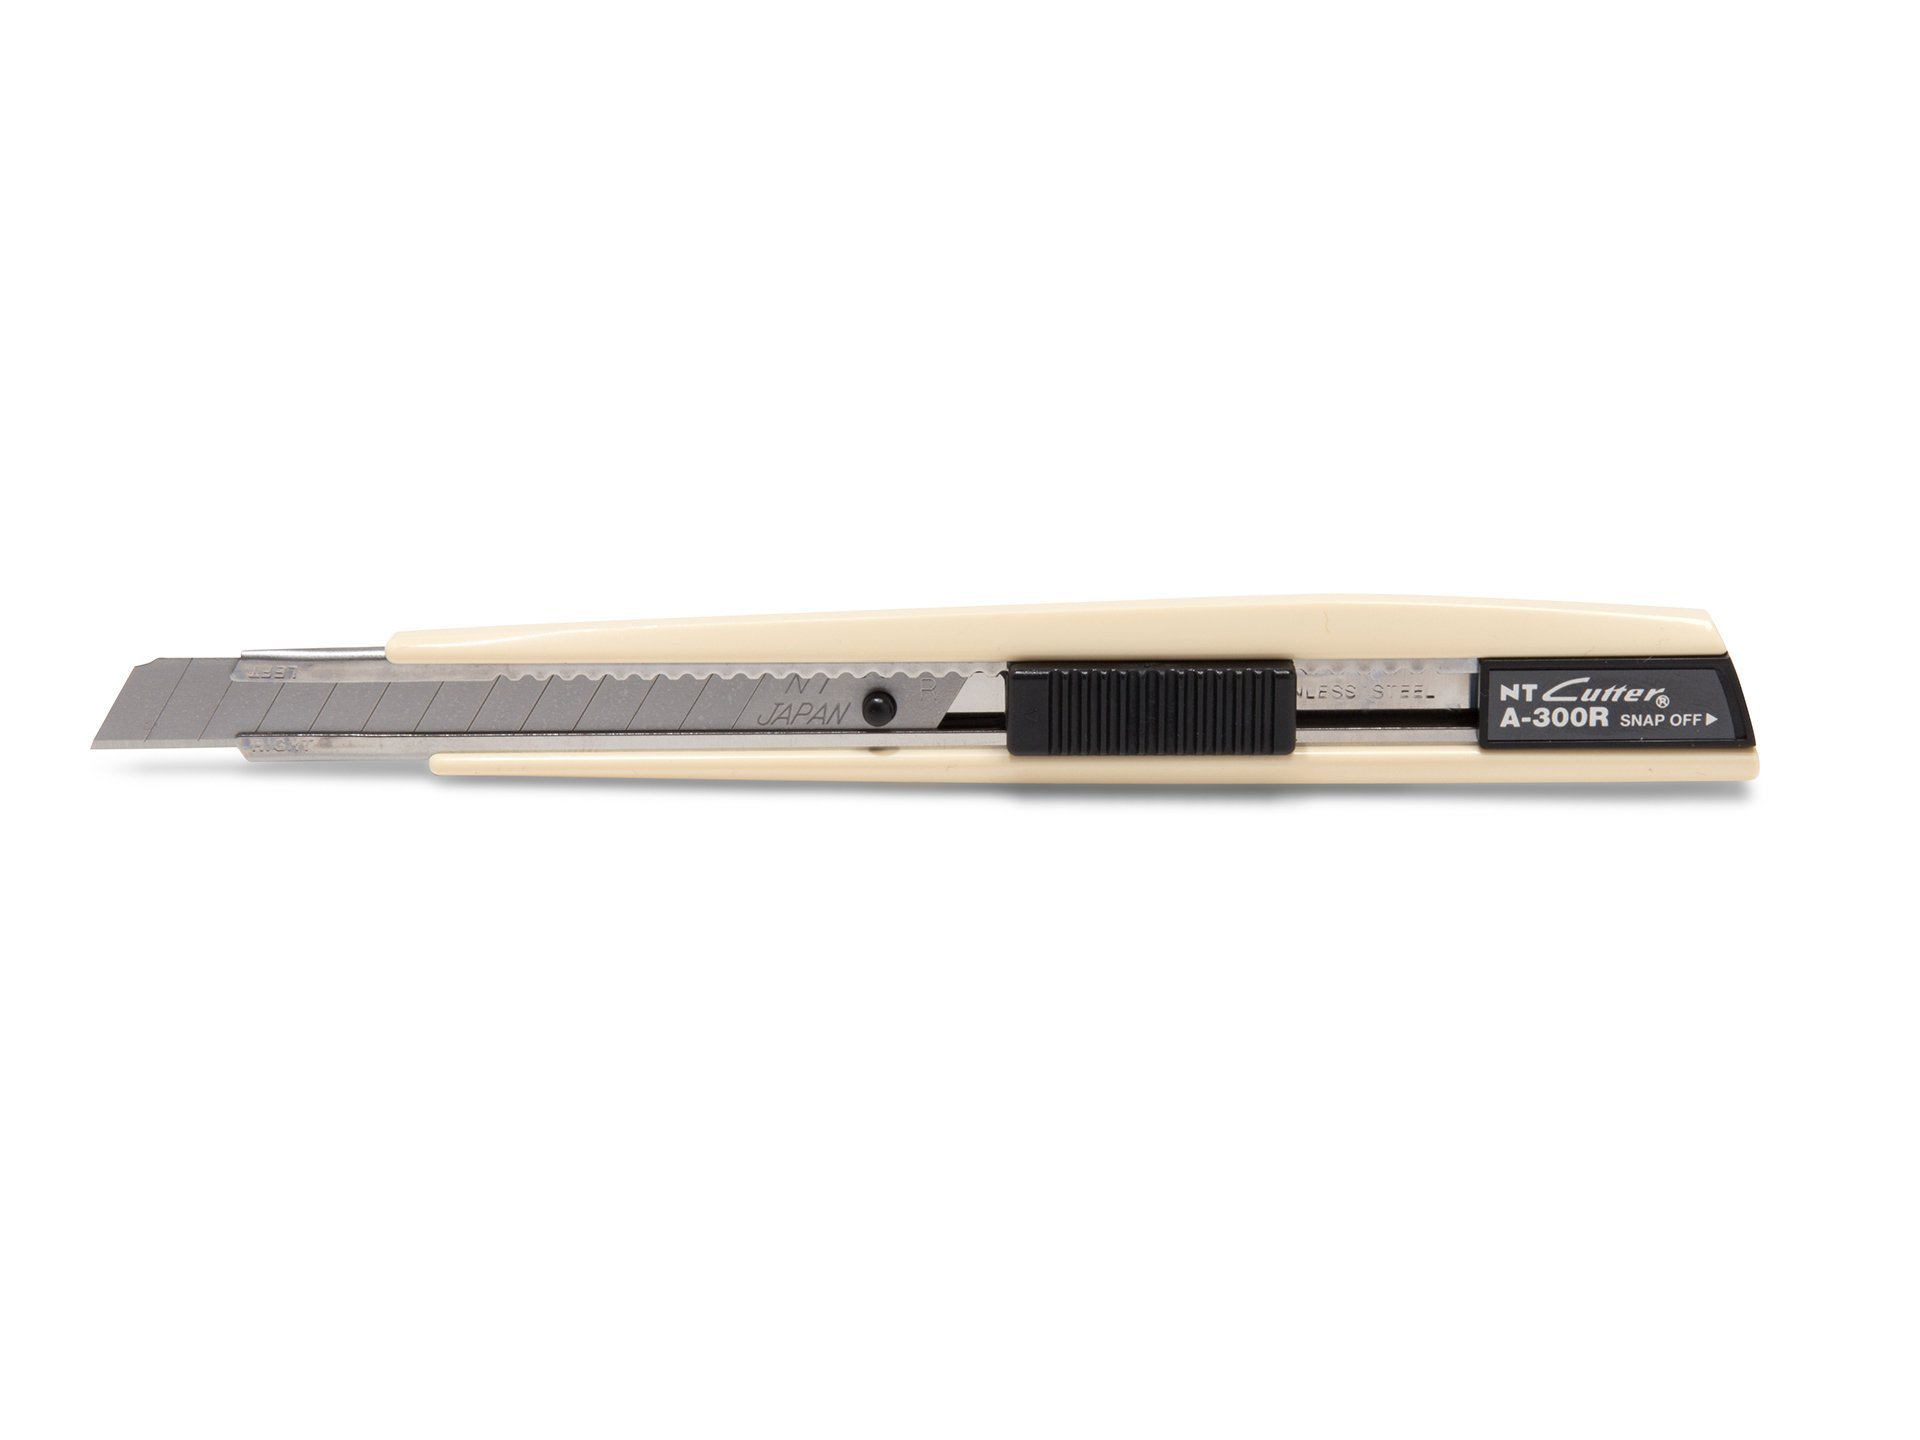 Couteau NT Schneider Cutter A-300 GRP 9mm pour emballage de voitures de  modélism, 4,94 €